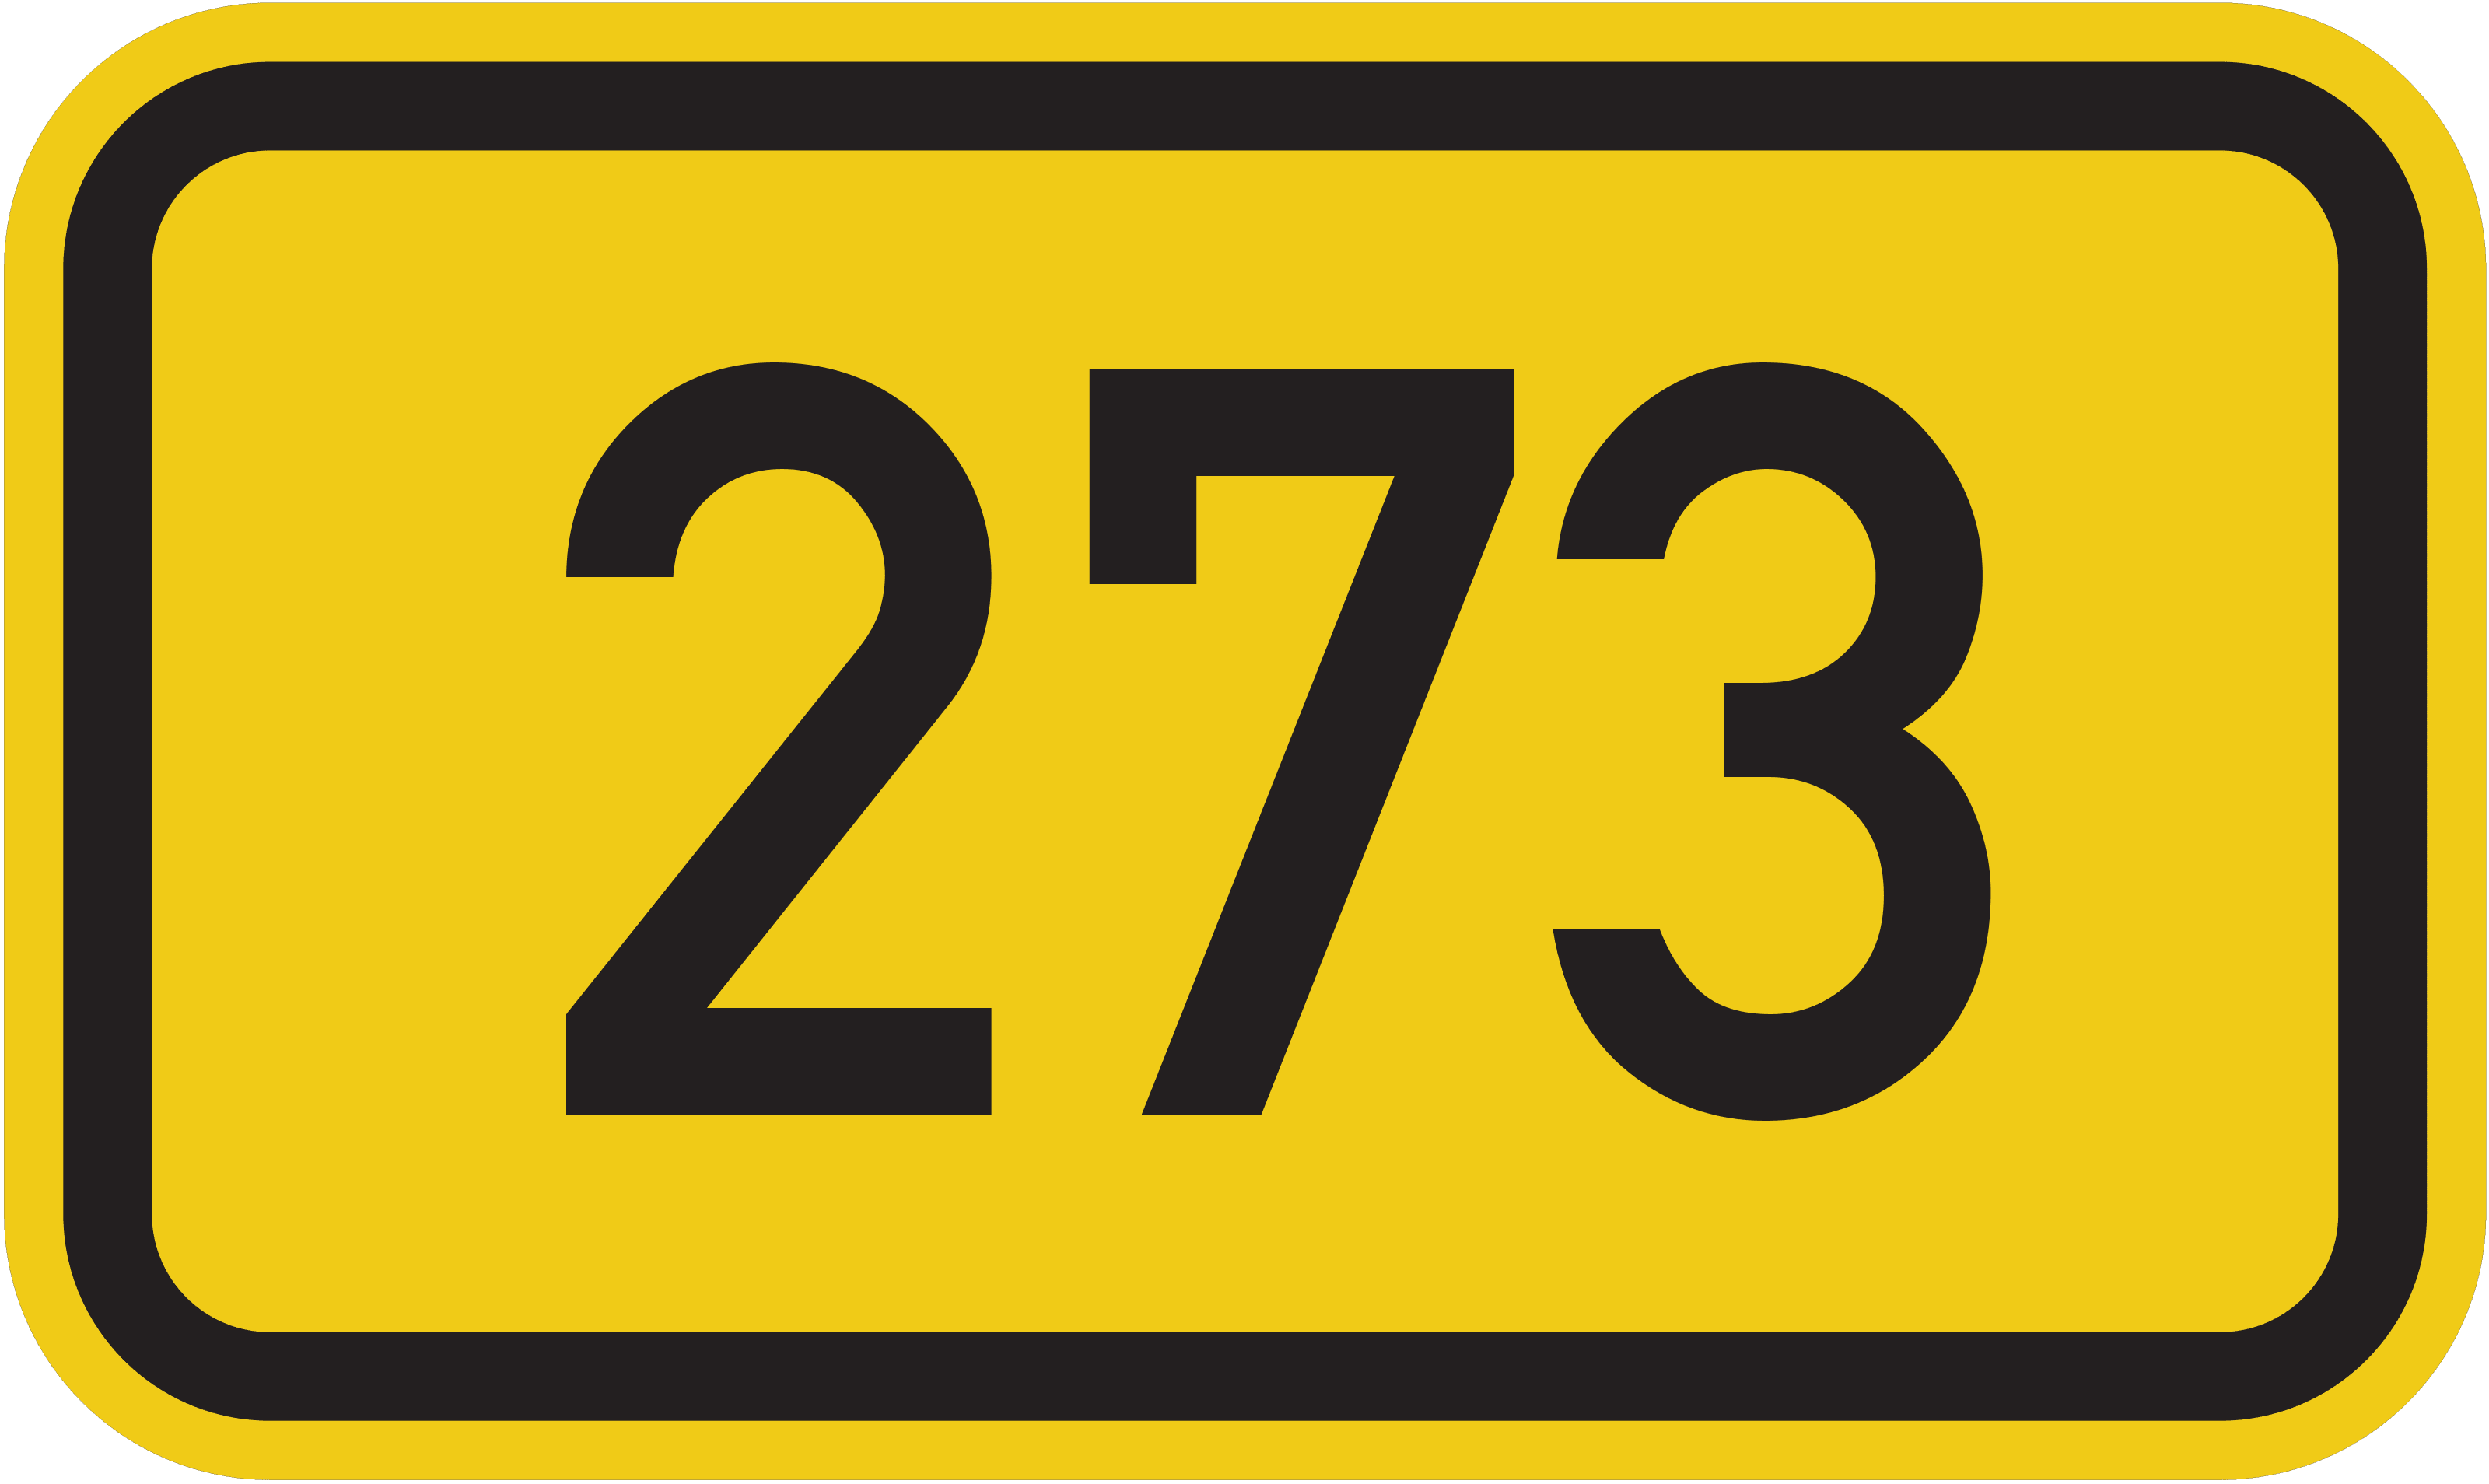 Bundesstraße B 273